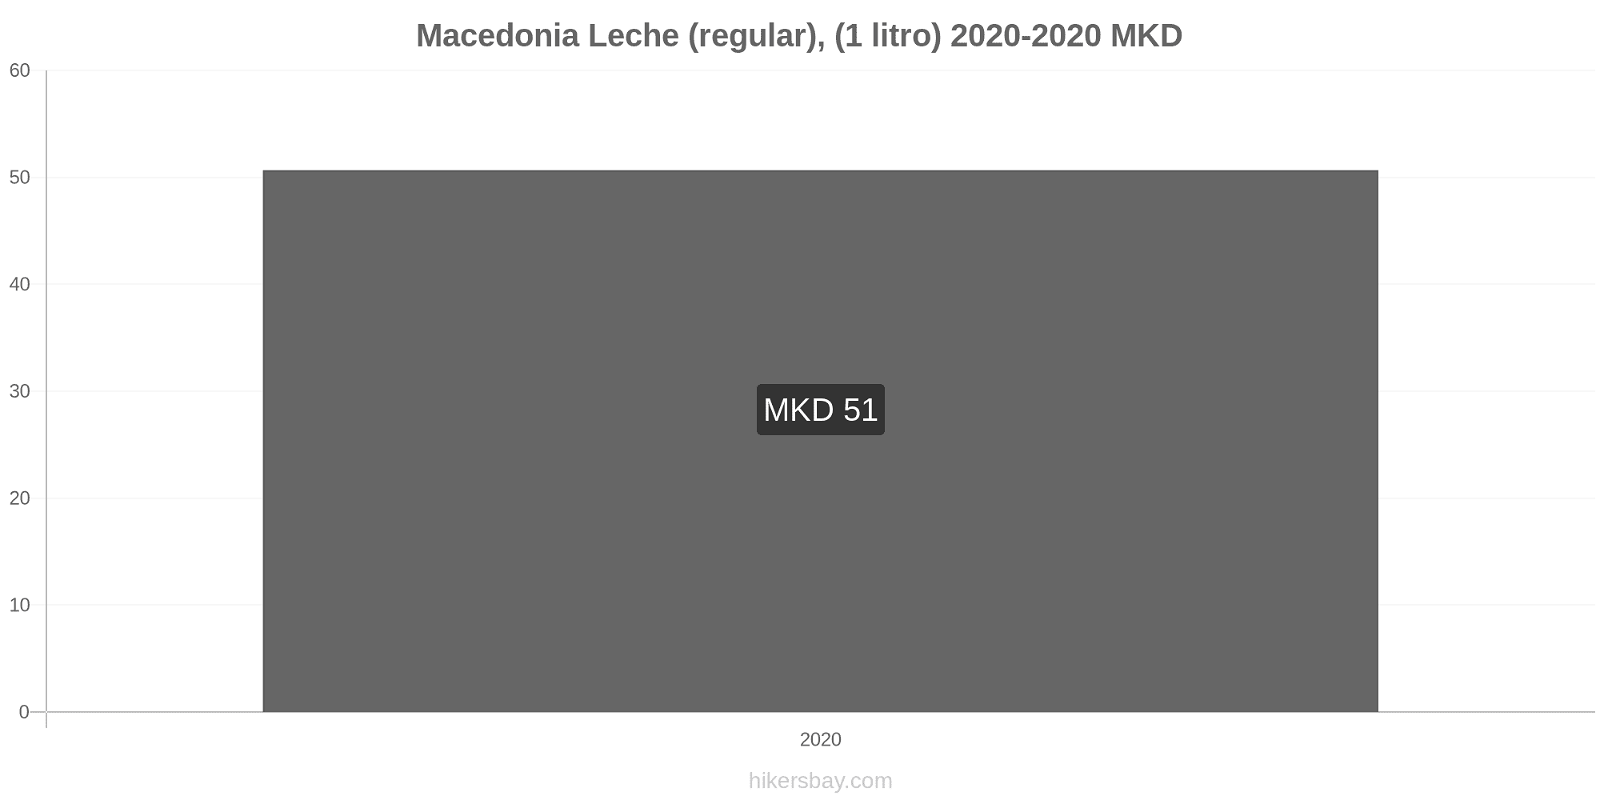 Macedonia cambios de precios Leche (Regular), (1 litro) hikersbay.com